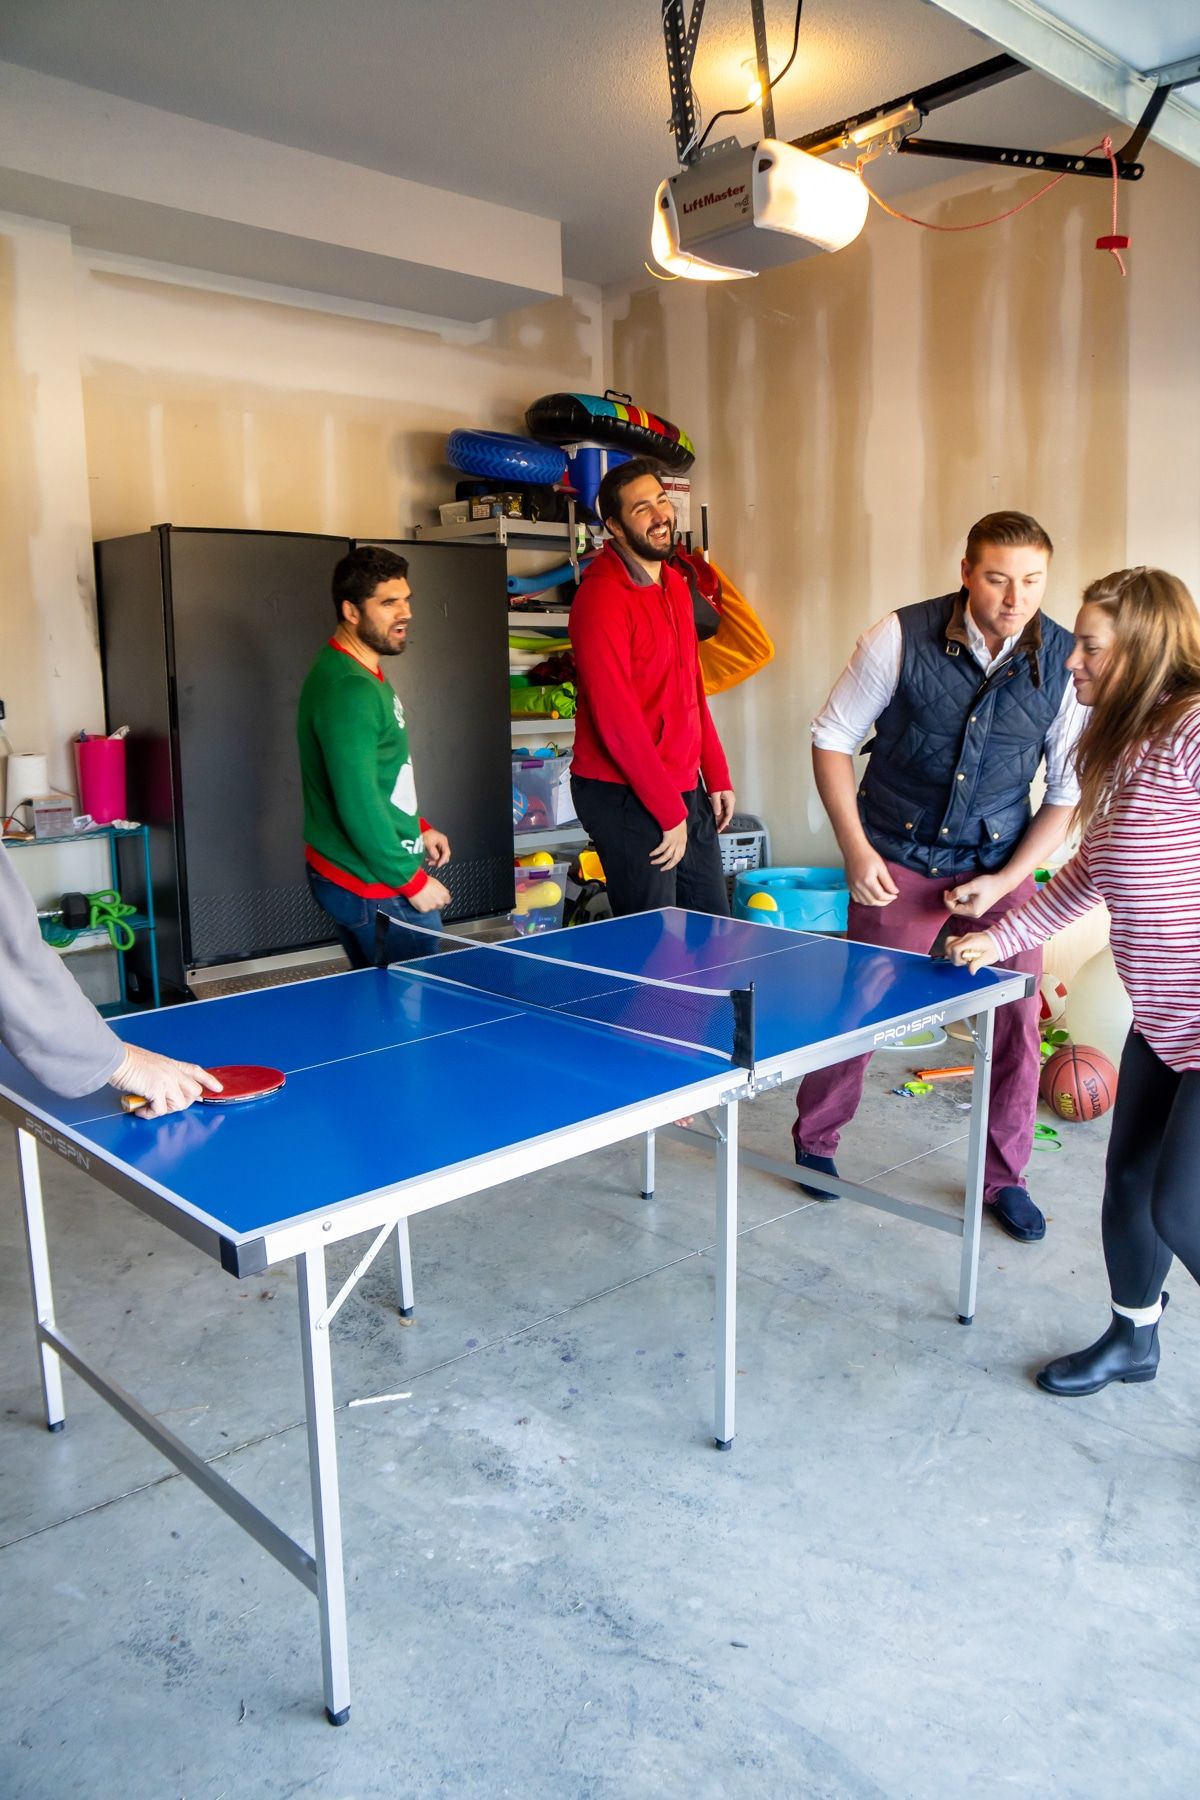 Familia jugando juegos de ping pong alrededor de una mesa de ping pong